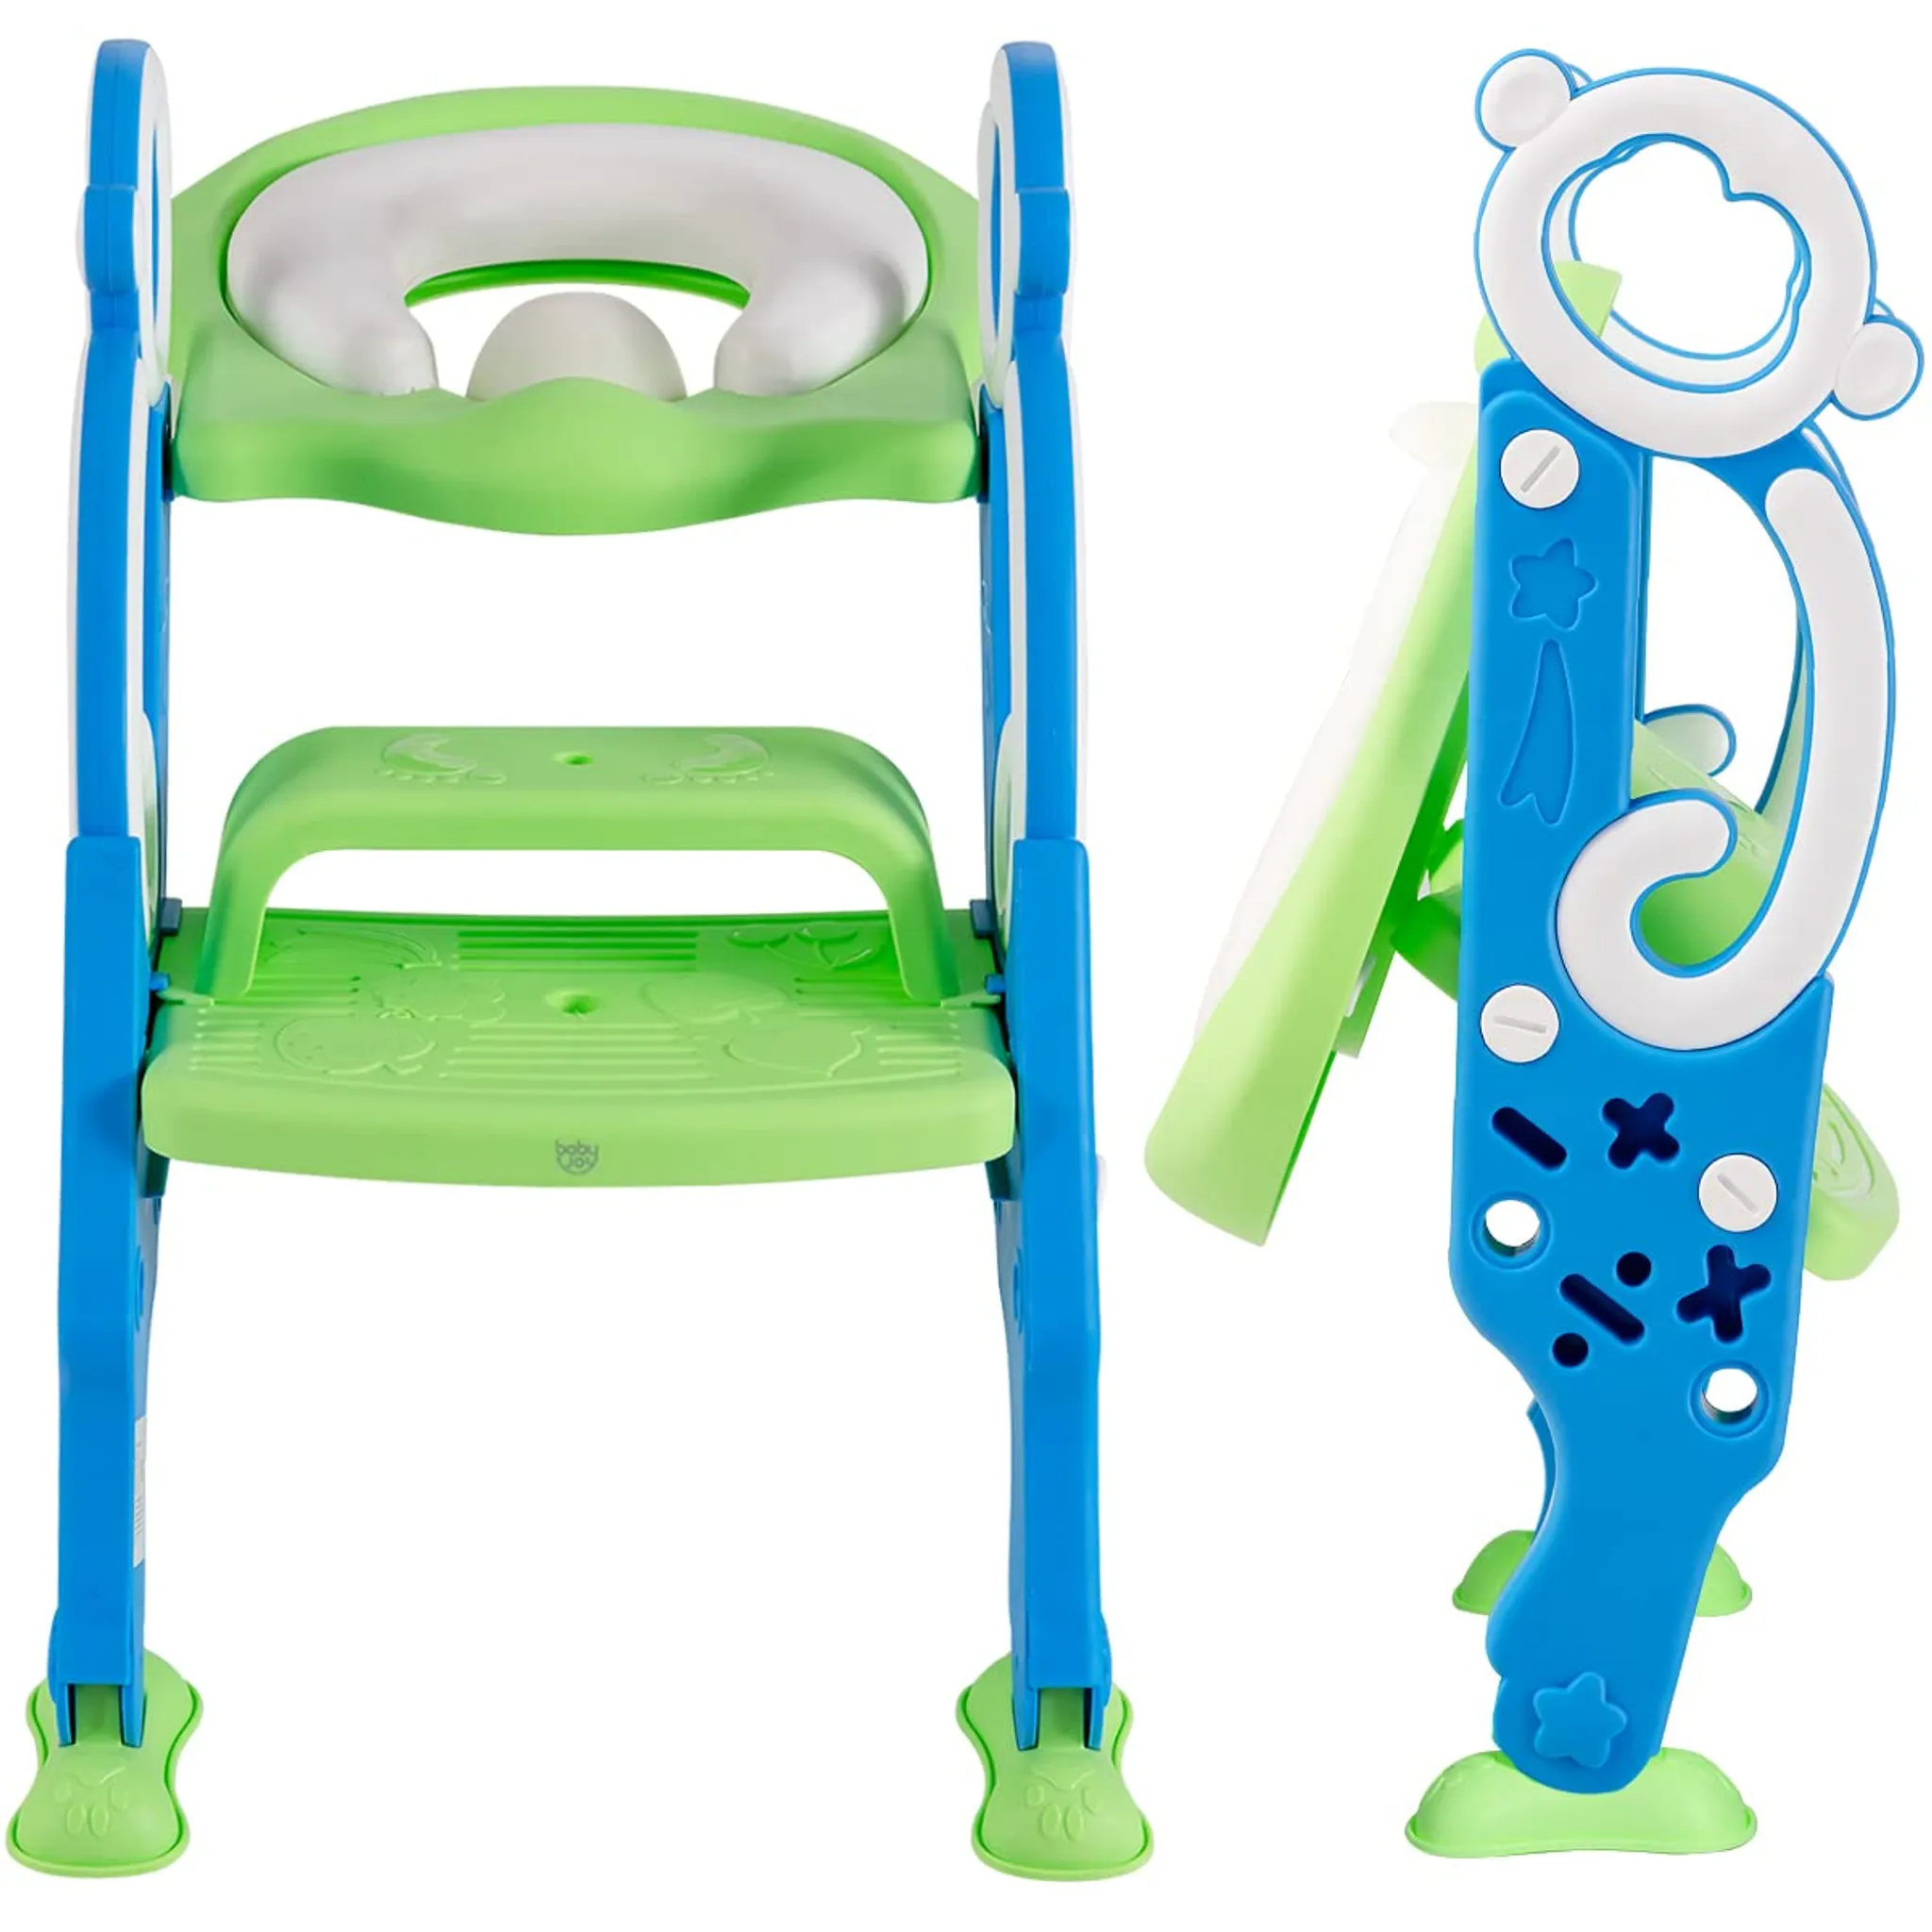 Töpfchentrainer Kinder-Töpfchen Toilettensitz mit Treppe Rutschfest stabil  klappbar und höhenverstellbar (Blau Grün）